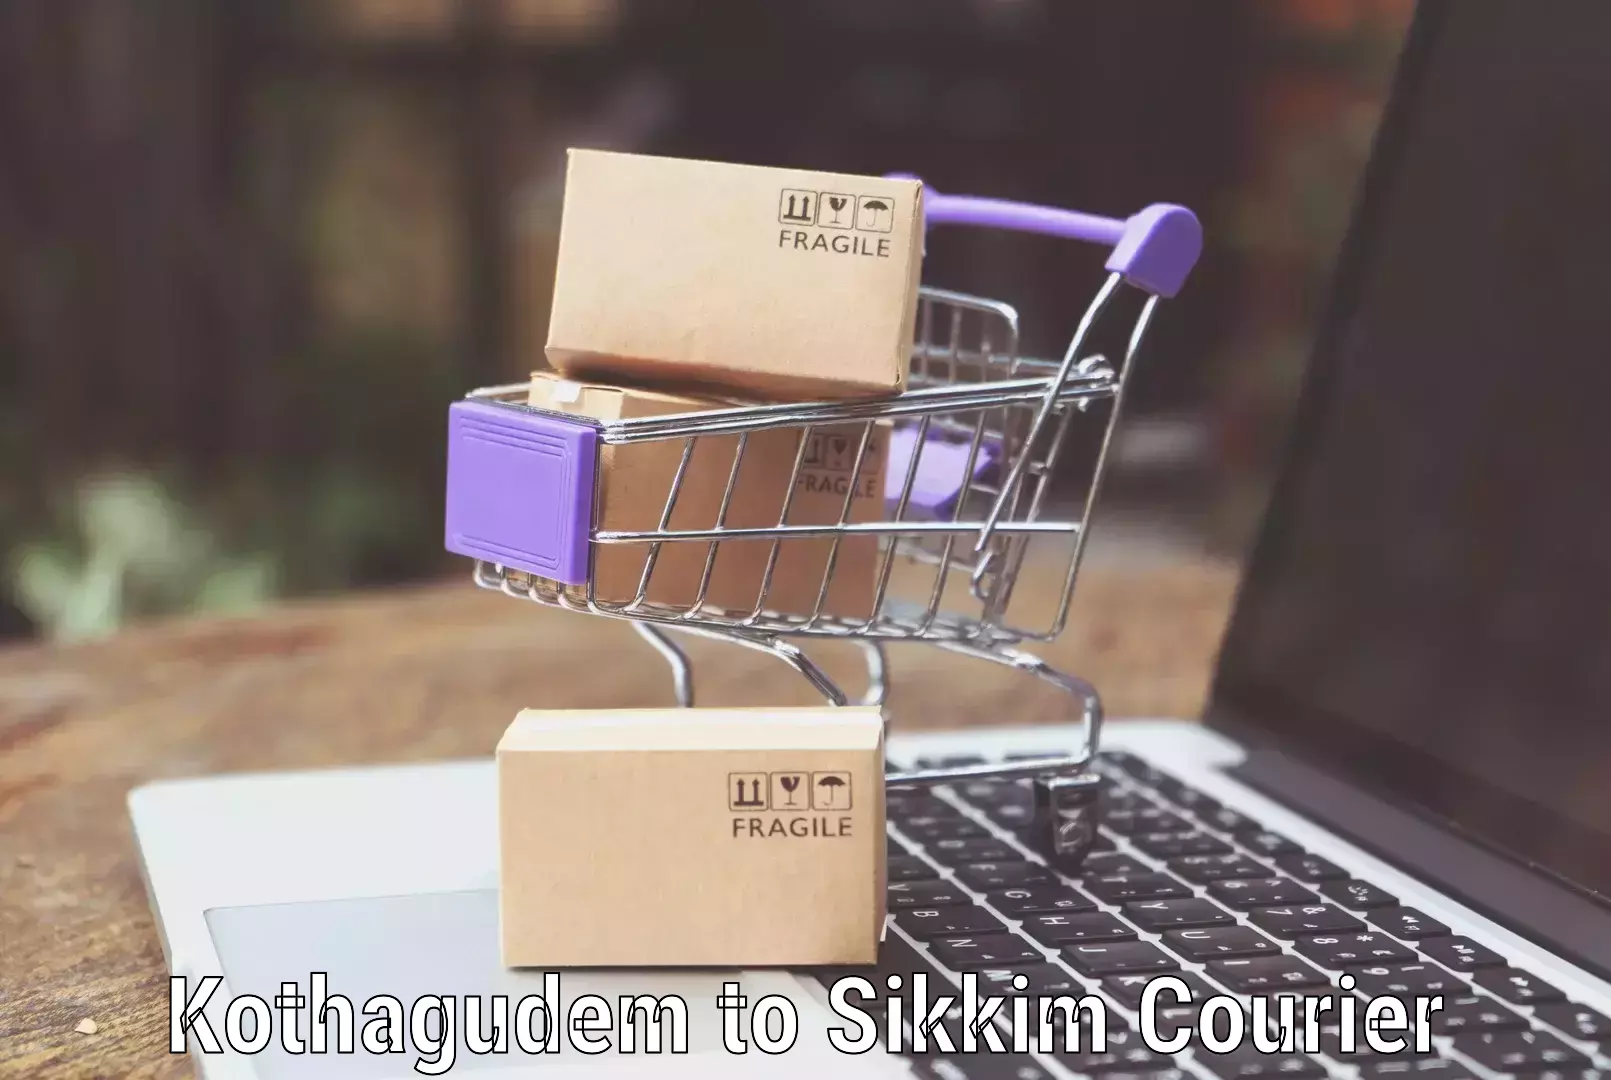 Luggage transport service Kothagudem to NIT Sikkim